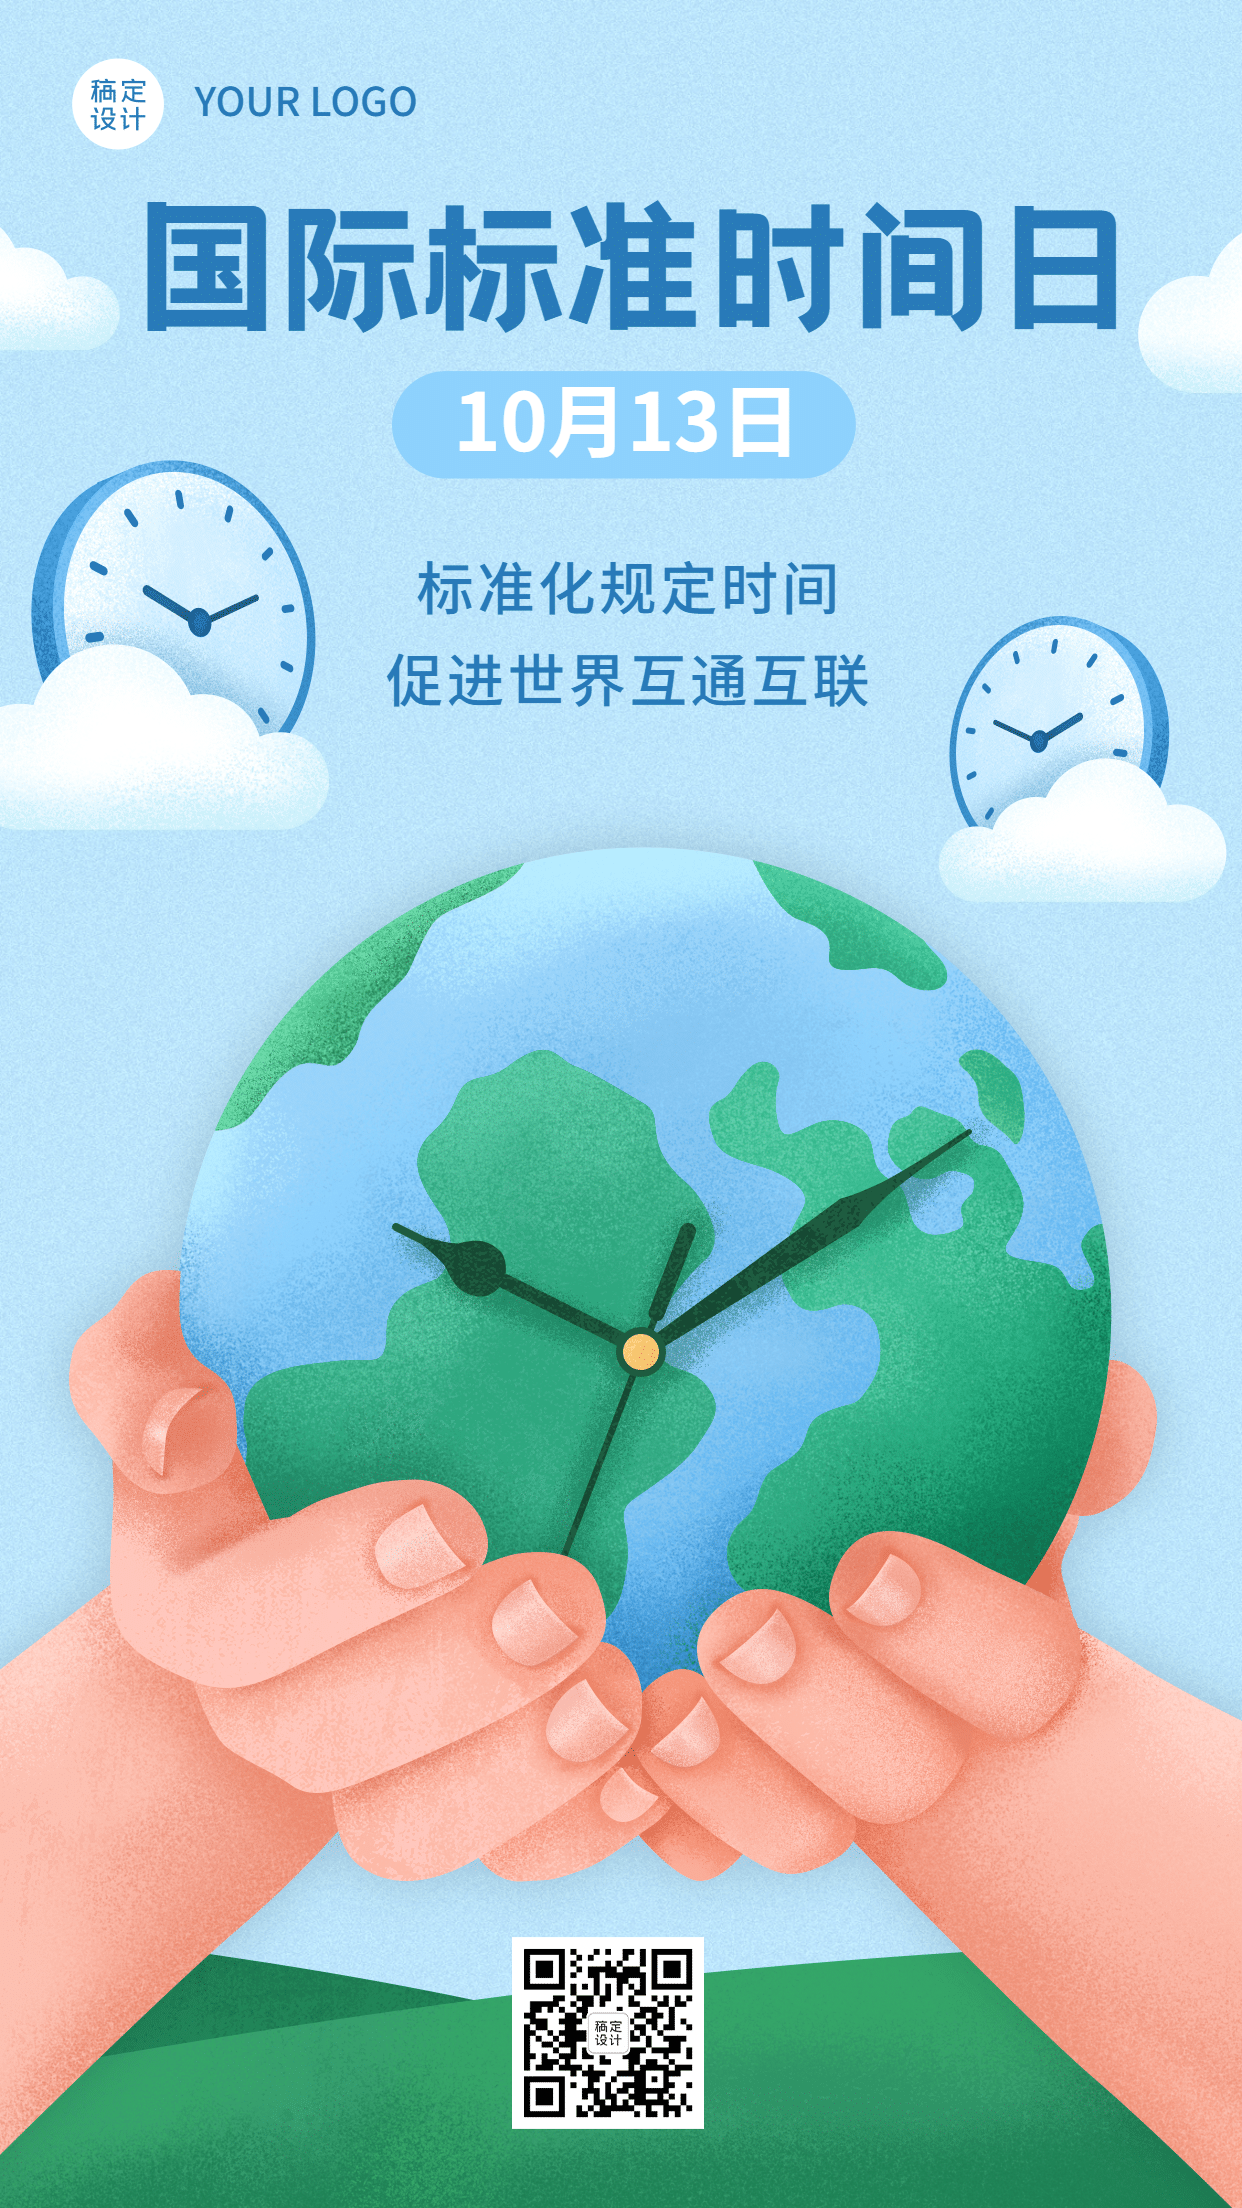 国际标准时间日准确计时宣传手绘海报